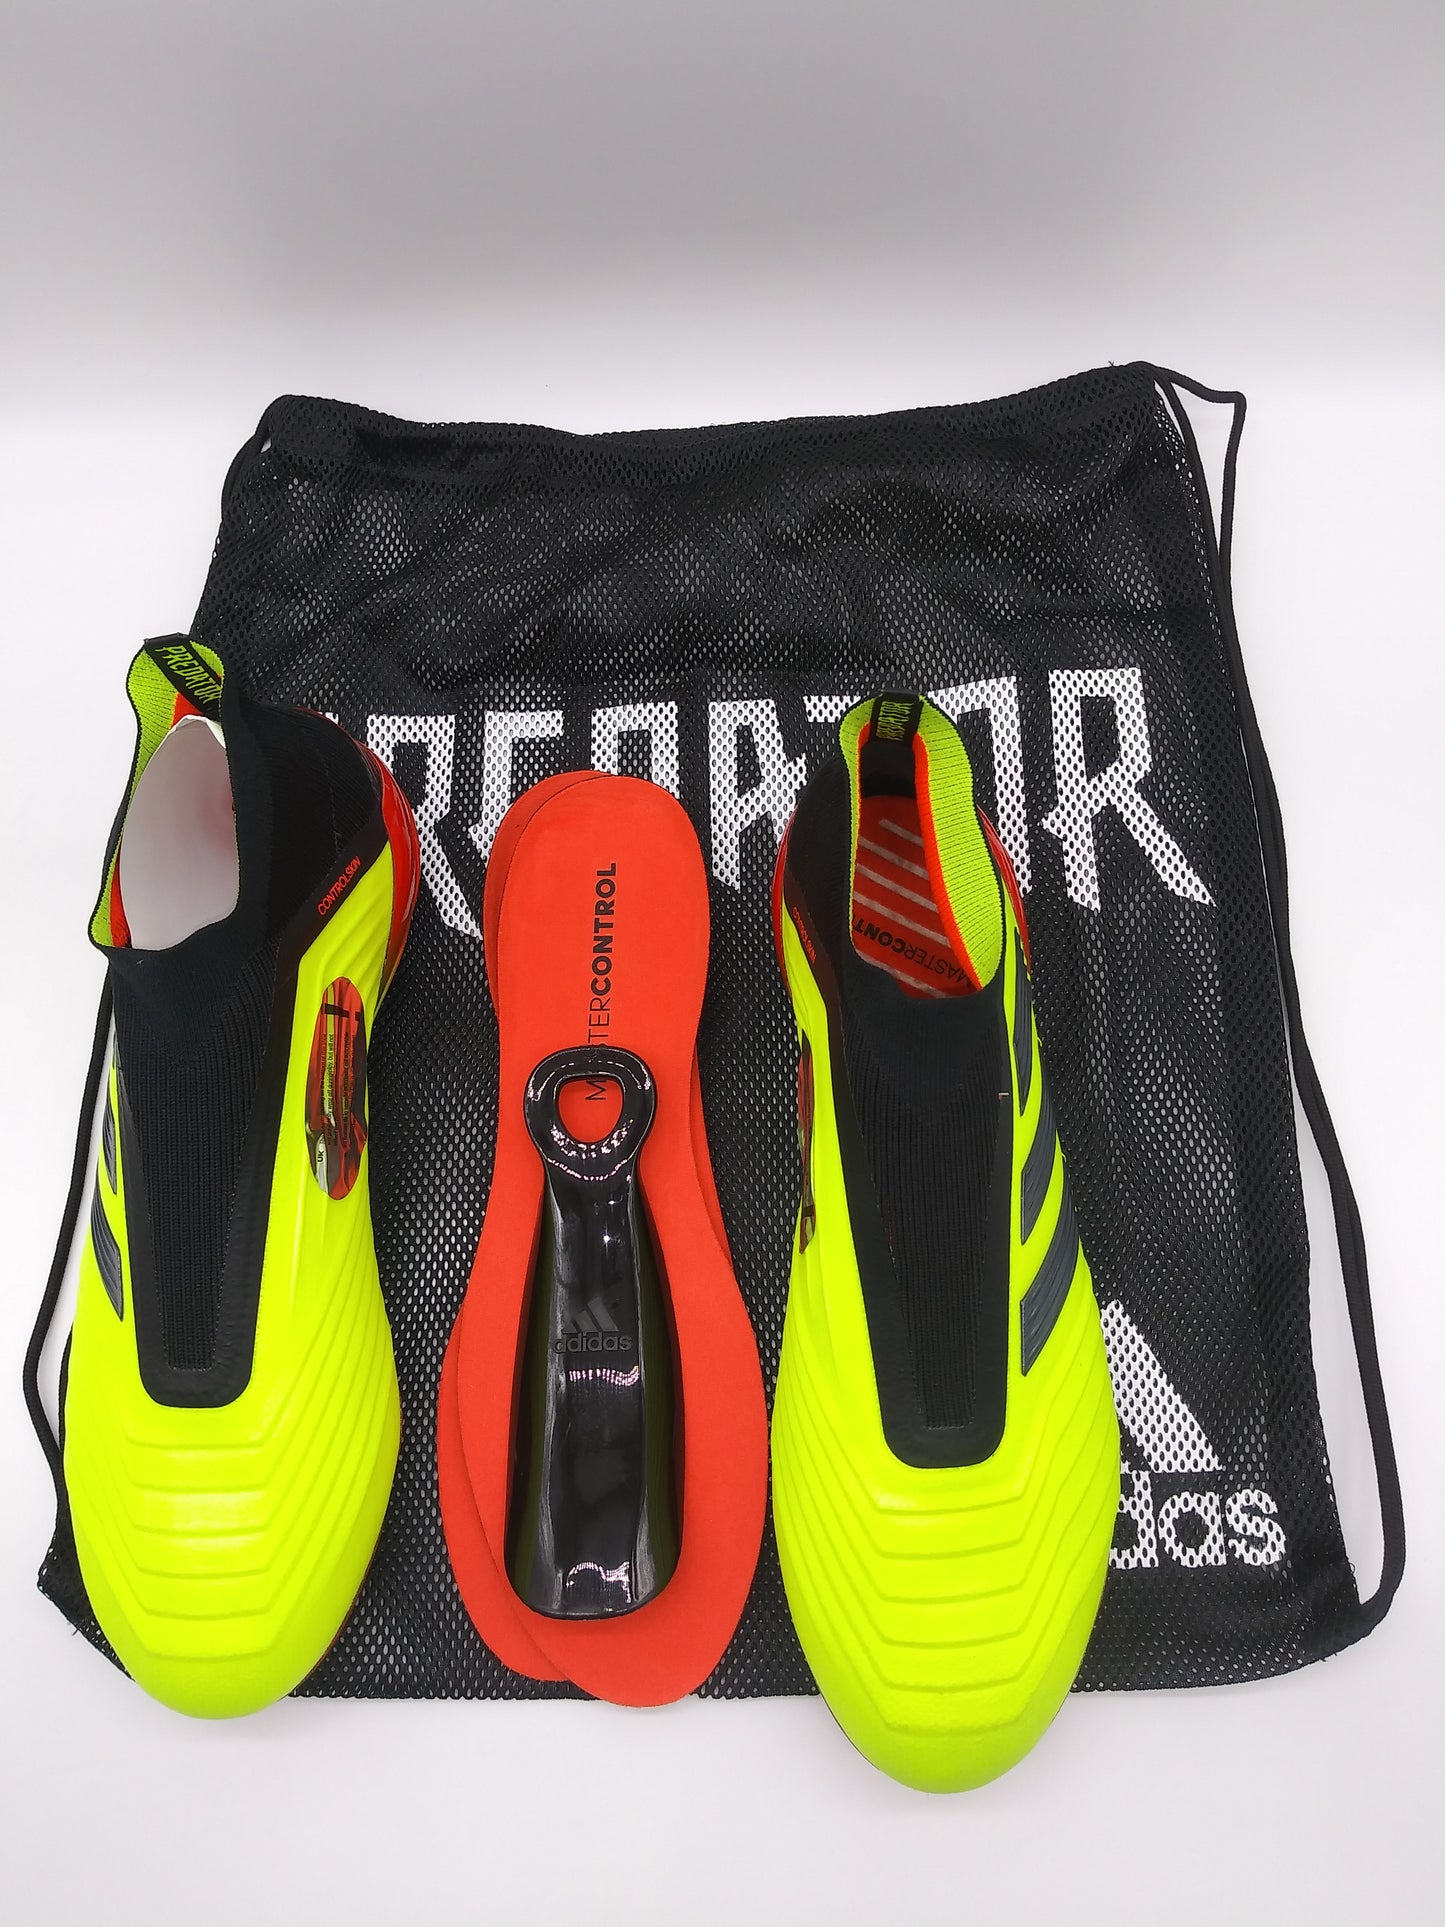 Adidas Predator 18+ FG Yellow Black